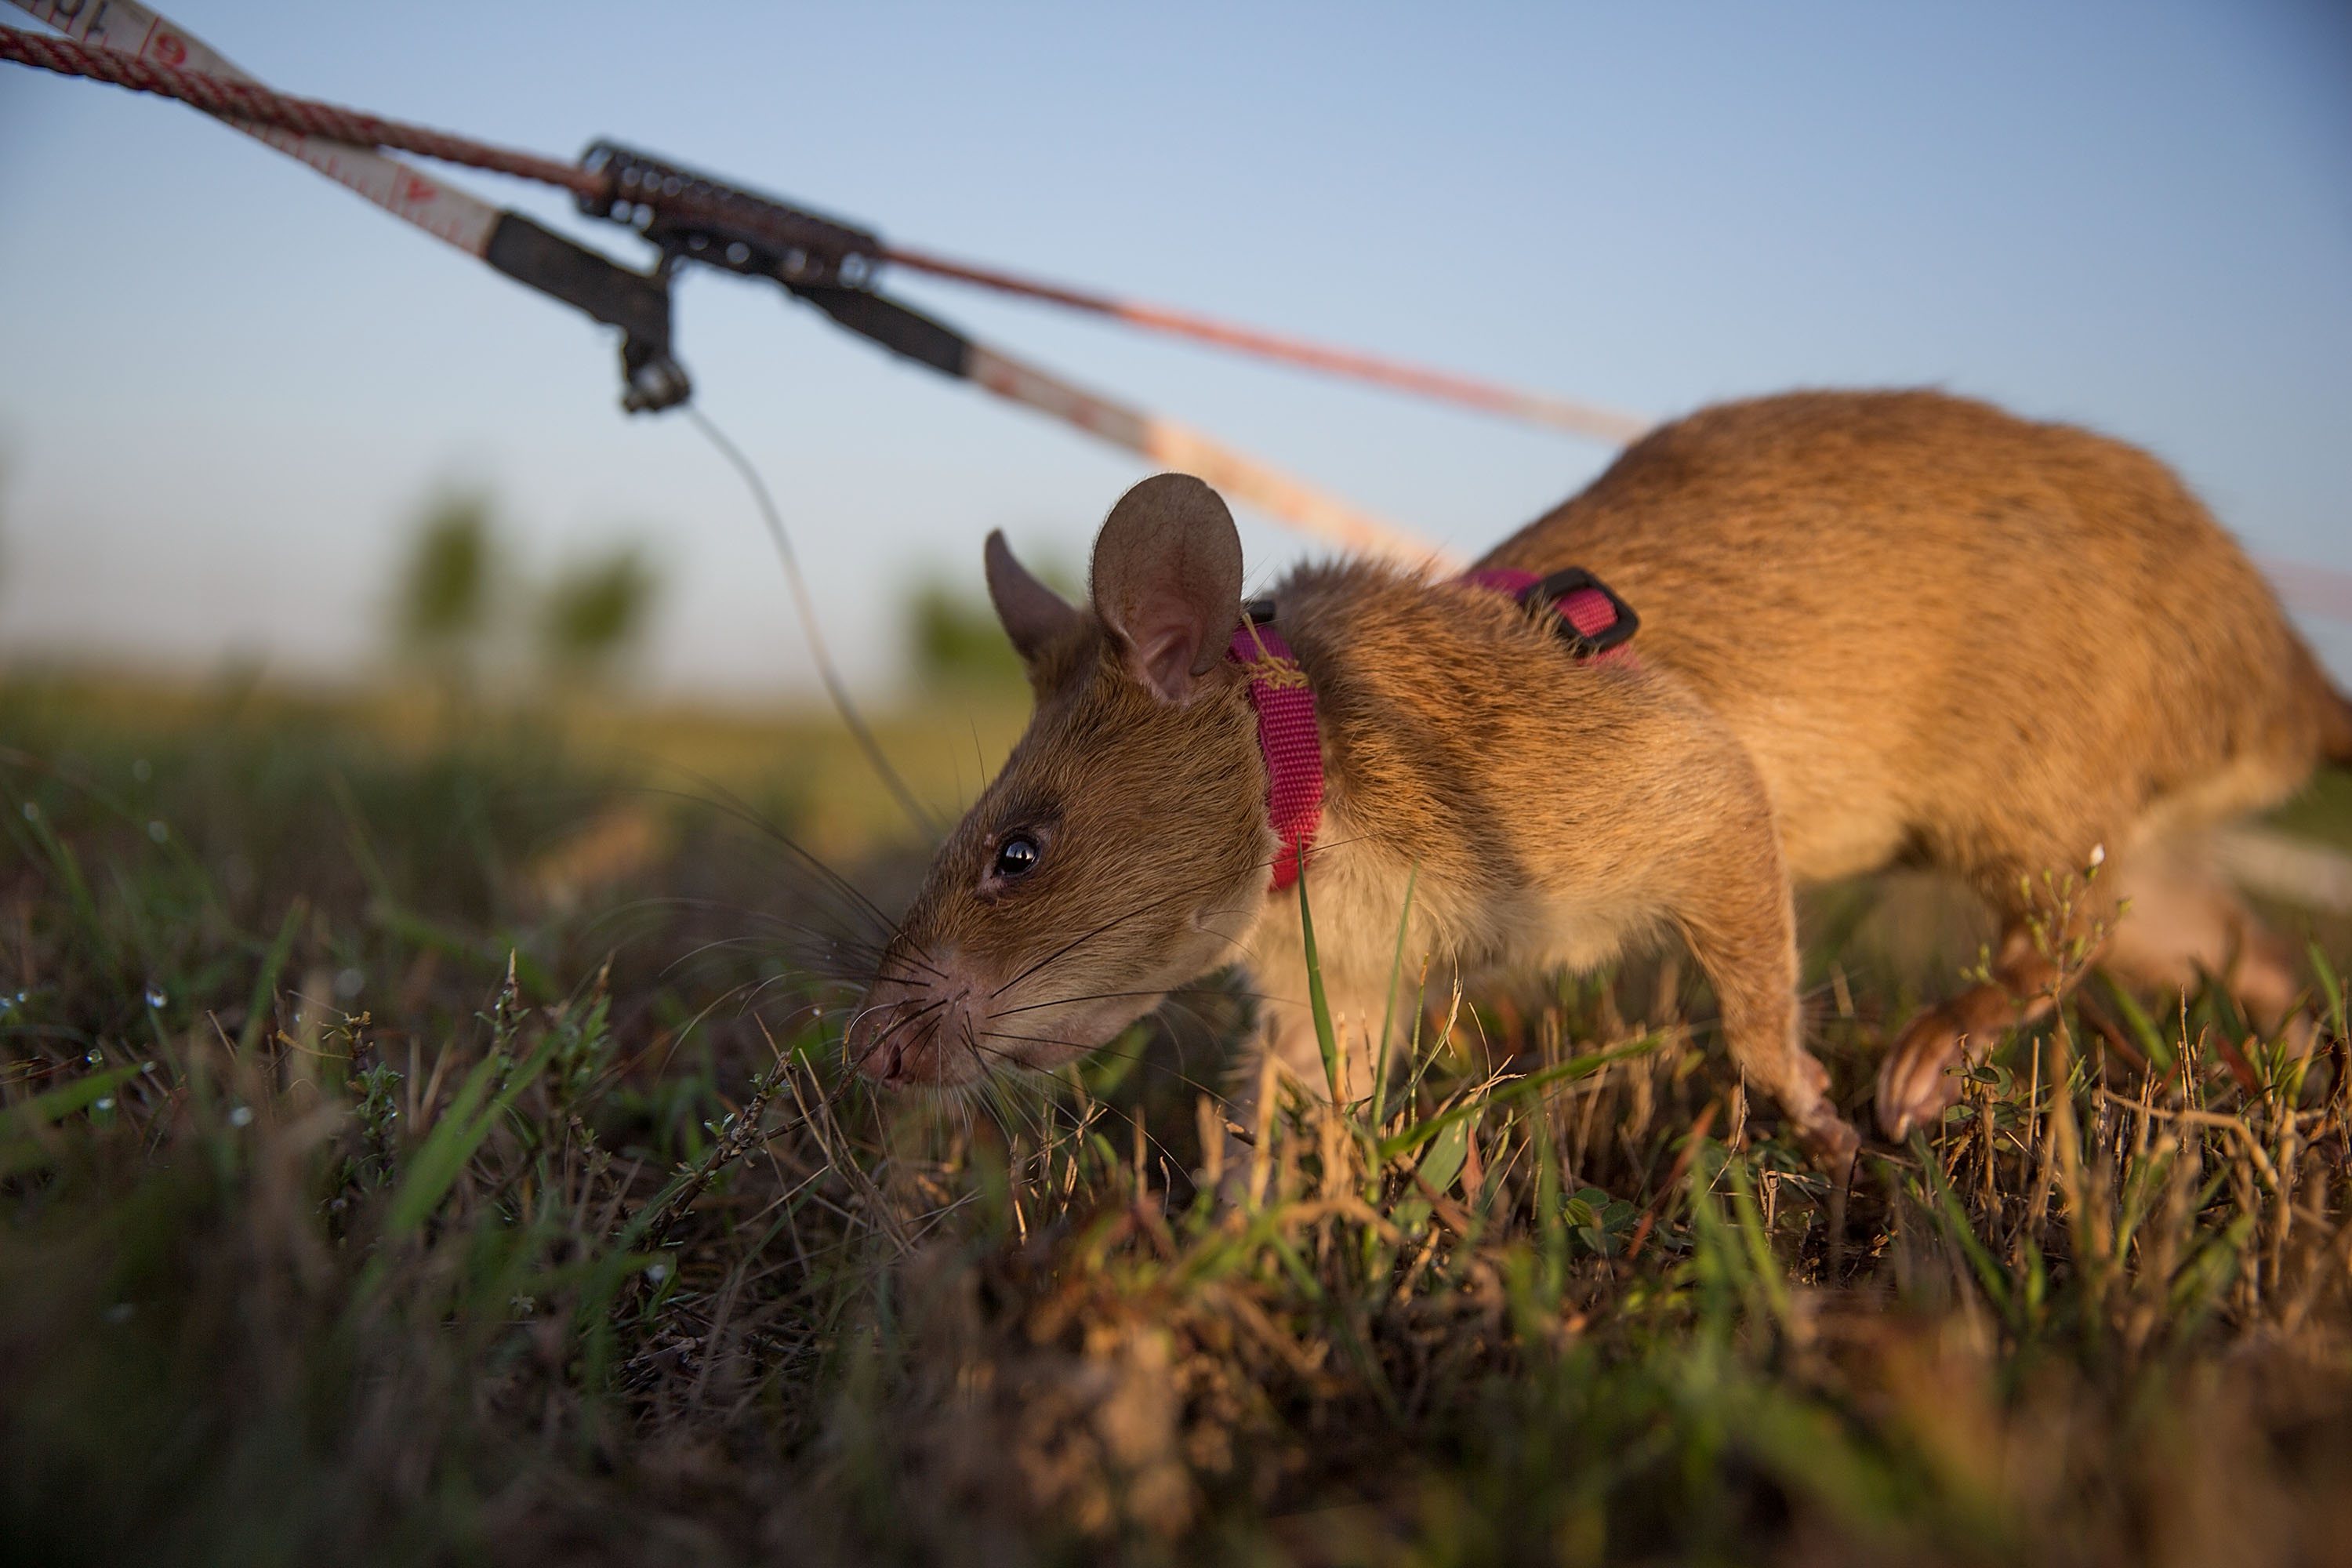 Os ratos treinados pela associação Apopo têm como missão descobrir minas terrestres em países outrora abalados por conflitos